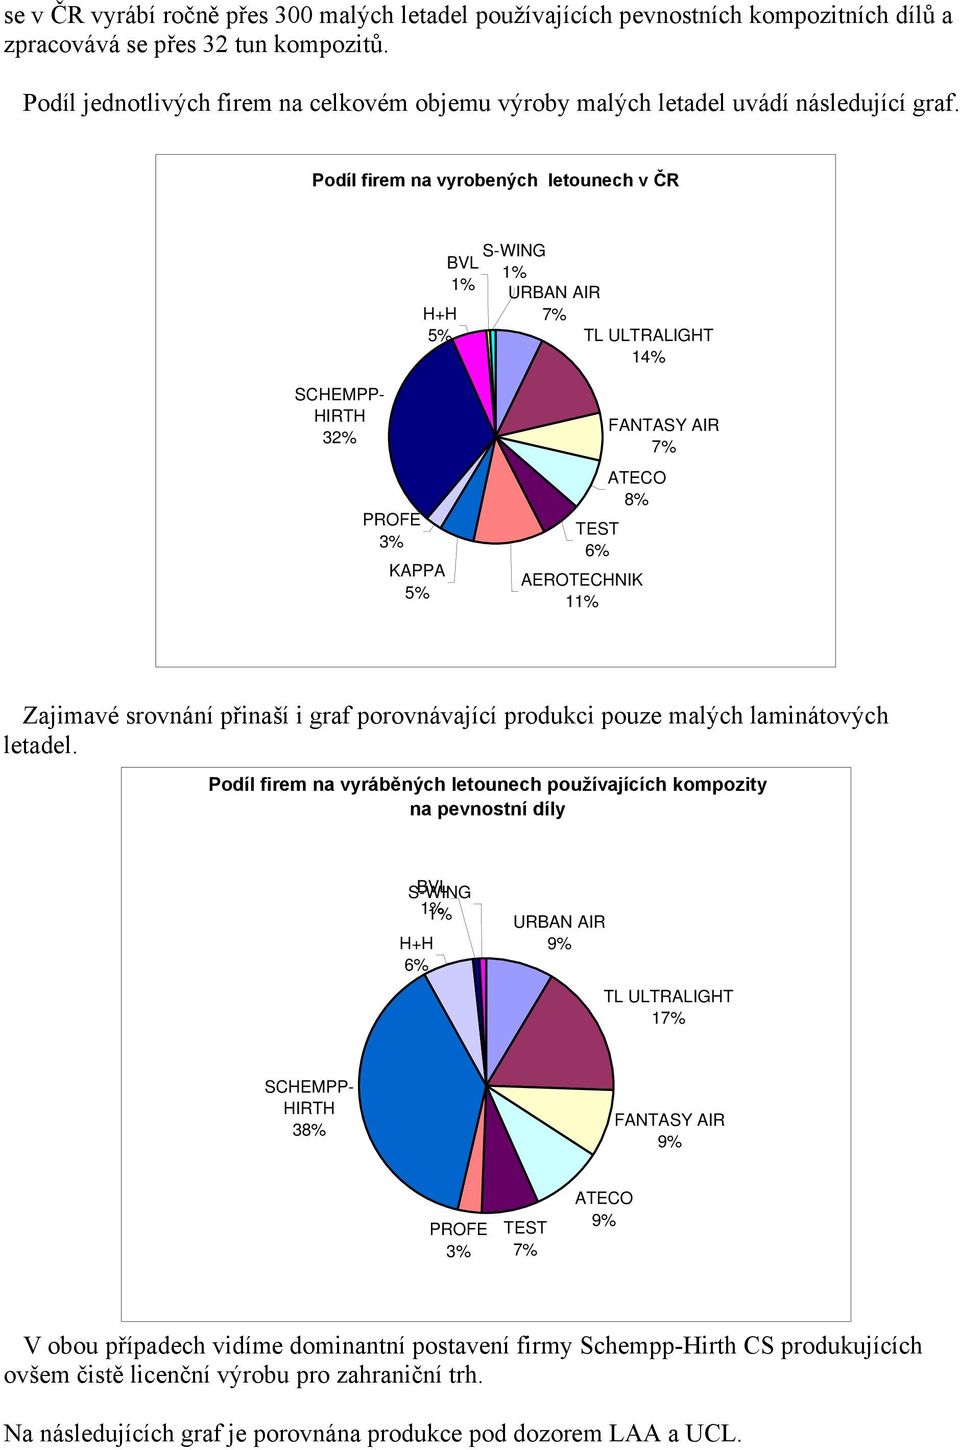 Podíl firem na vyrobených letounech v ČR H+H 5% S-WING BVL 1% 1% URBAN AIR 7% TL ULTRALIGHT 14% SCHEMPP- HIRTH 32% PROFE 3% KAPPA 5% FANTASY AIR 7% ATECO 8% TEST 6% AEROTECHNIK 11% Zajimavé srovnání